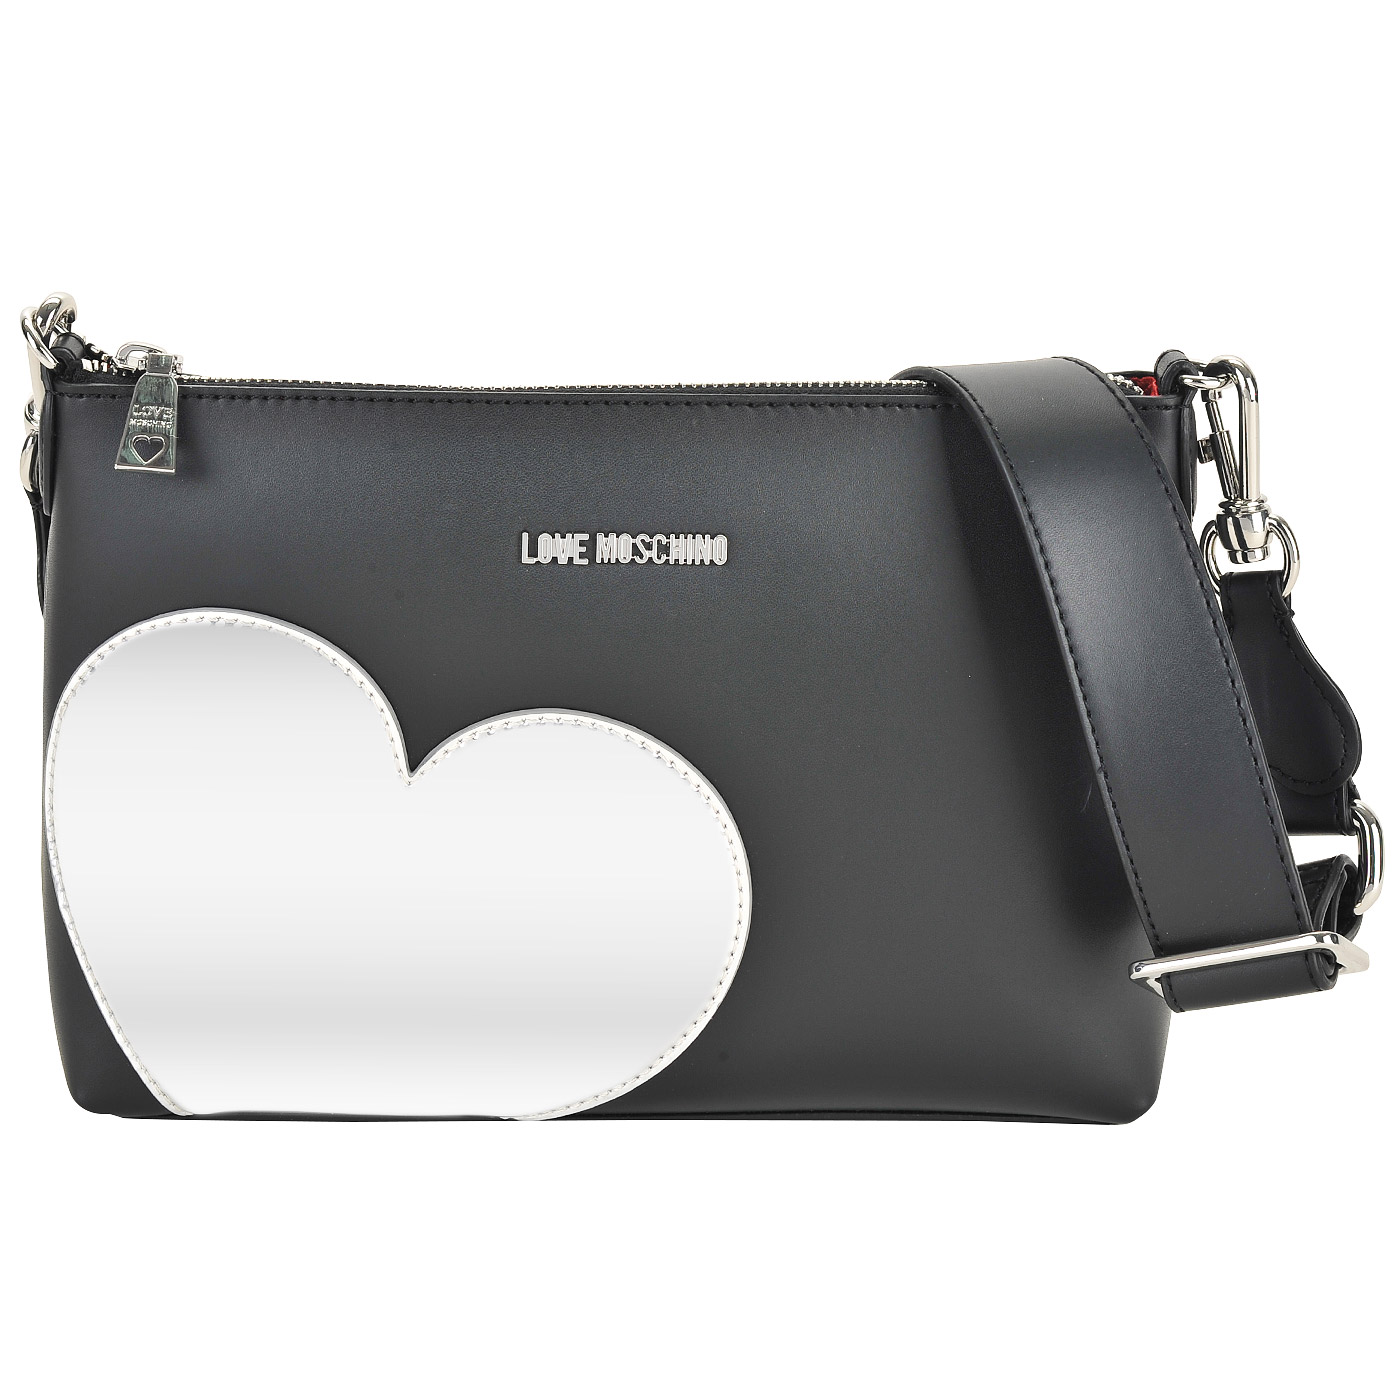 Маленькая черная сумка со съемным плечевым ремешком и с серебряной аппликацией Love Moschino